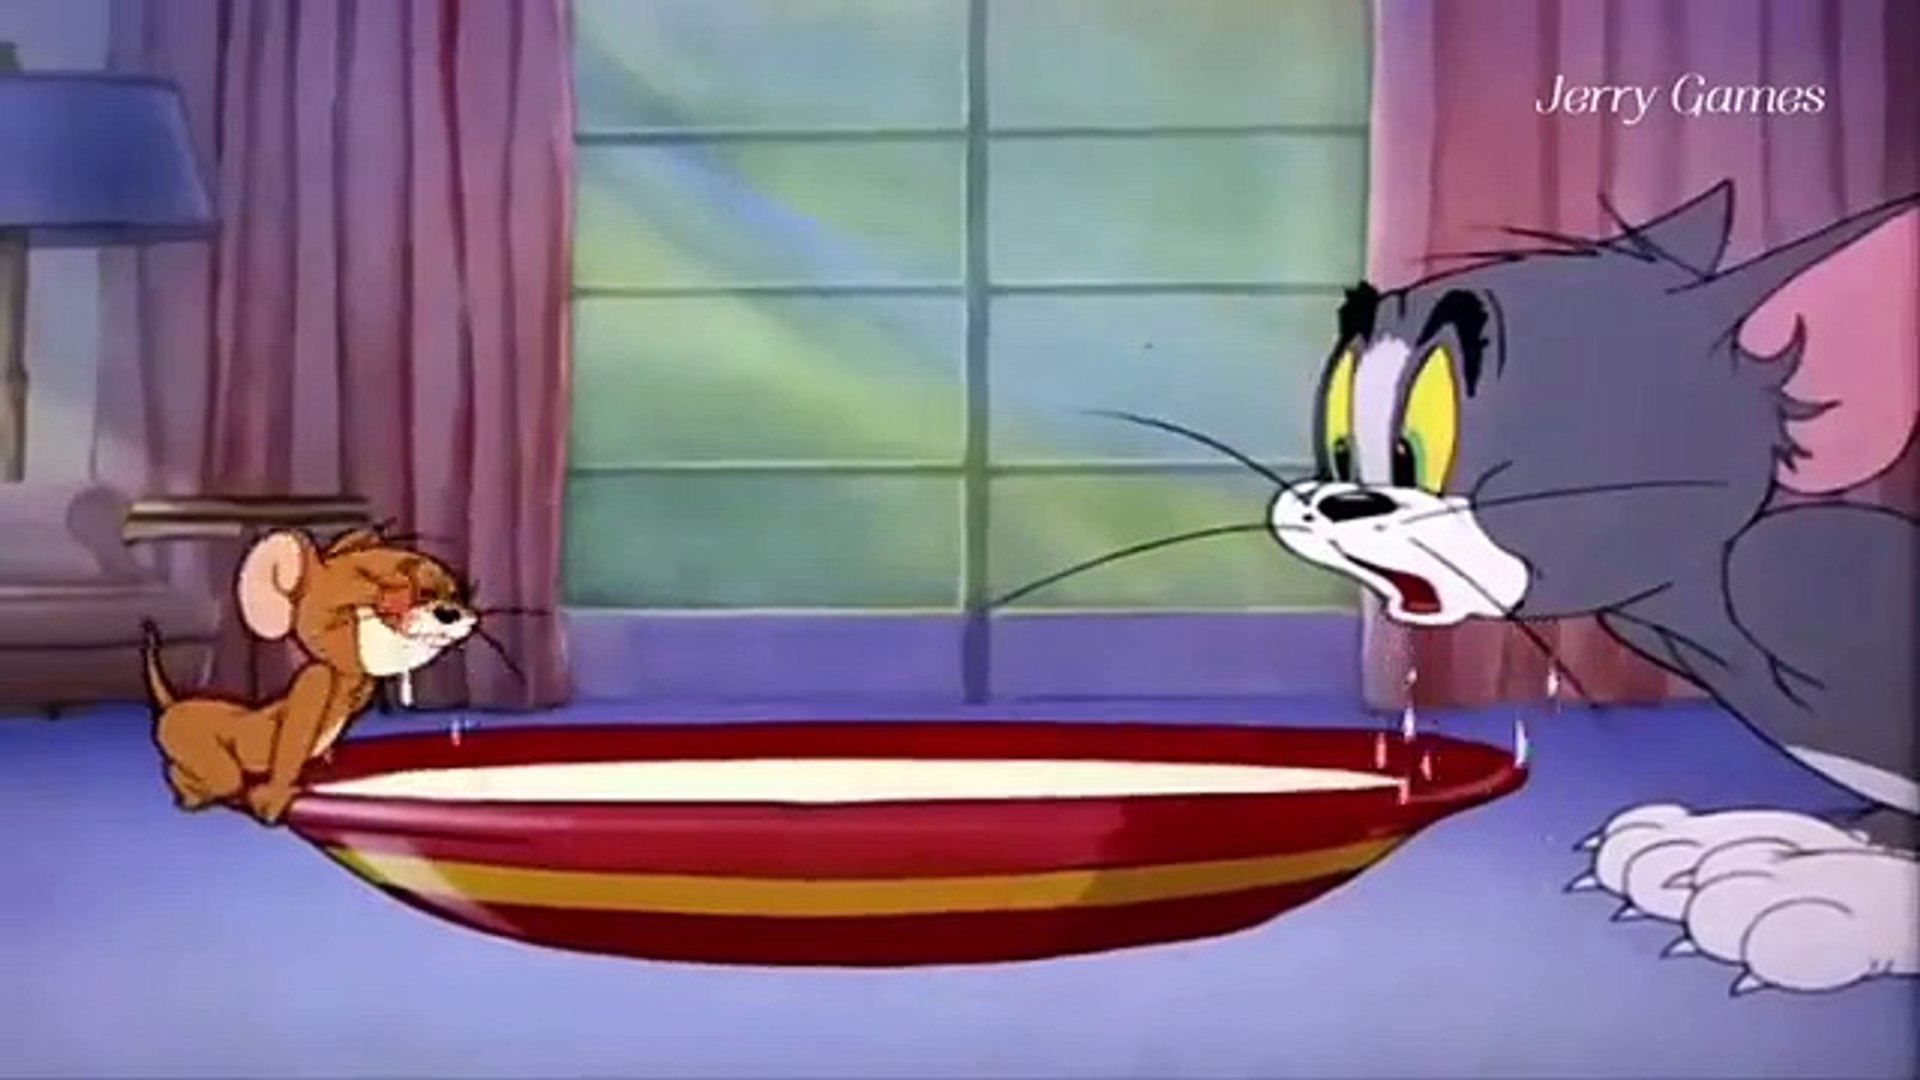 Доктор джерри. Том и Джерри 1947. Кот том и Джерри.